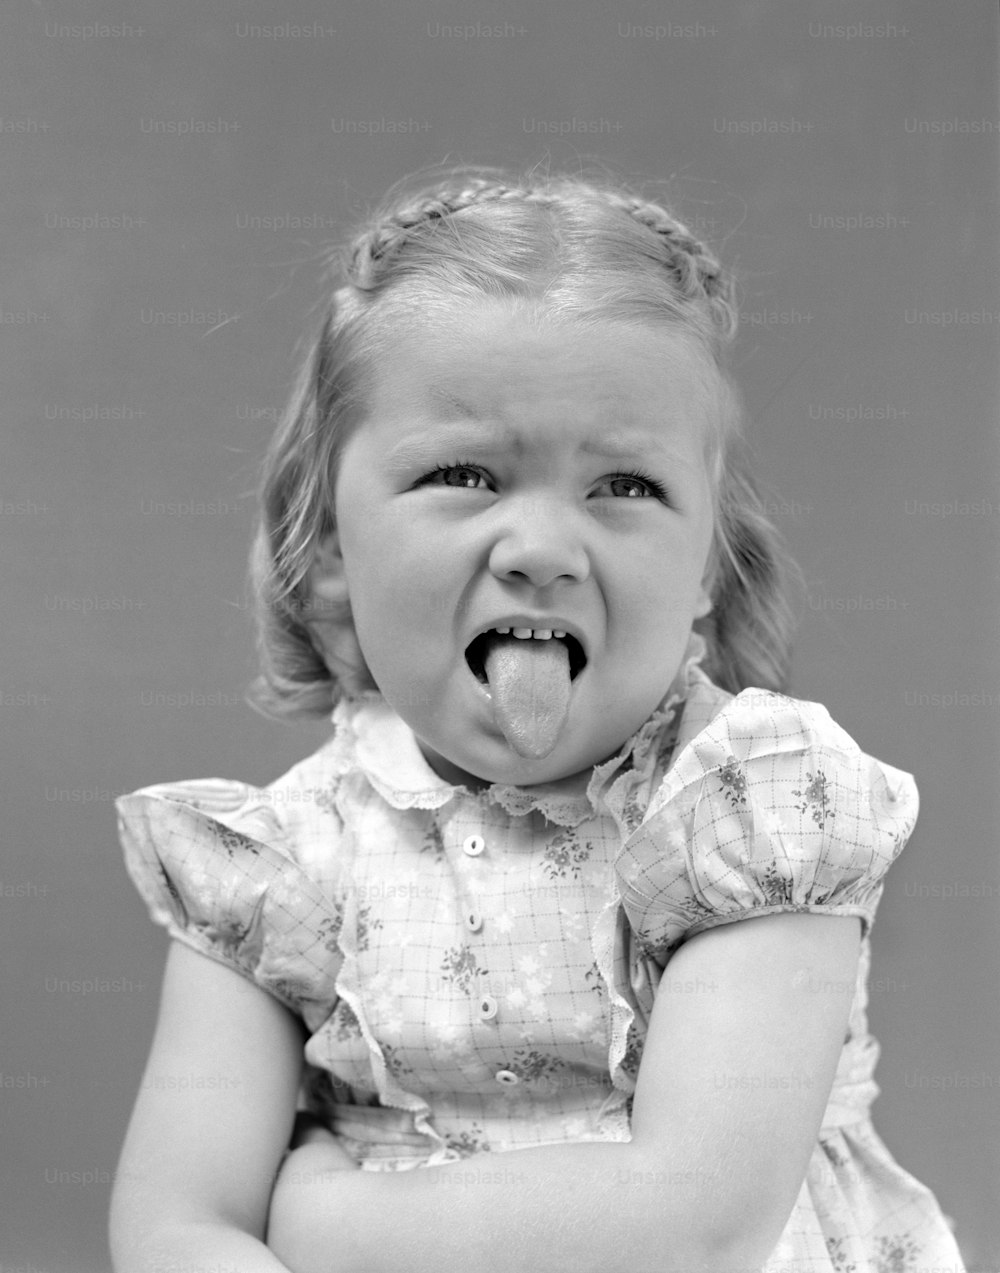 ÉTATS-UNIS - Vers les années 1930 : Fille fronçant les sourcils avec ses bras croisés, sa bouche ouverte et sa langue tirée portant une robe imprimée en coton avec un col blanc bordé de dentelle.